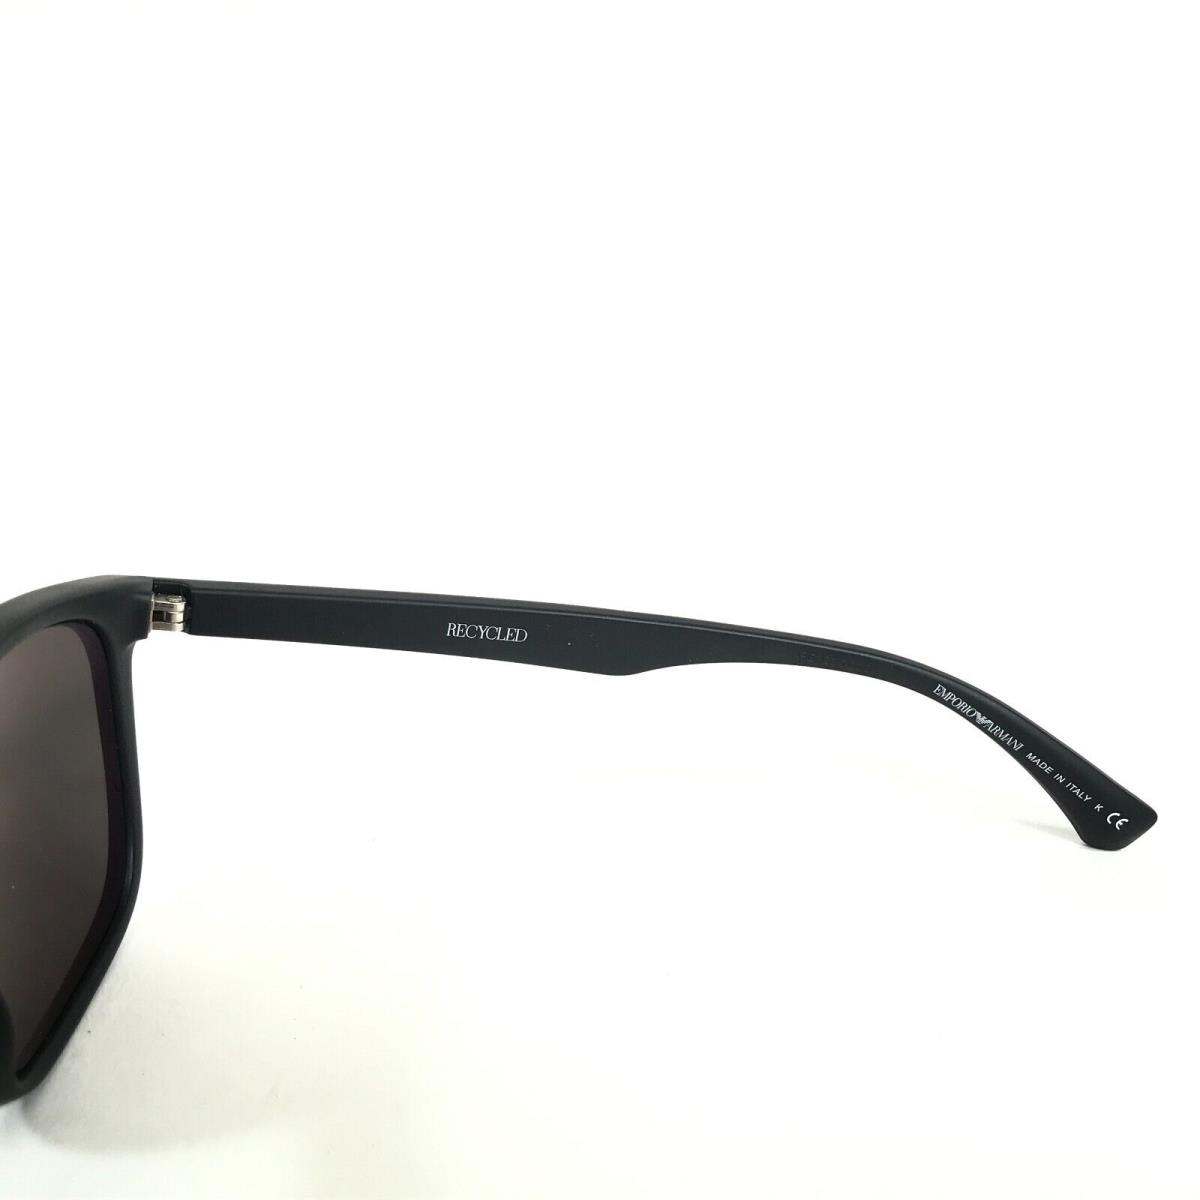 Emporio Armani sunglasses  - Black Frame, Gray Lens 6